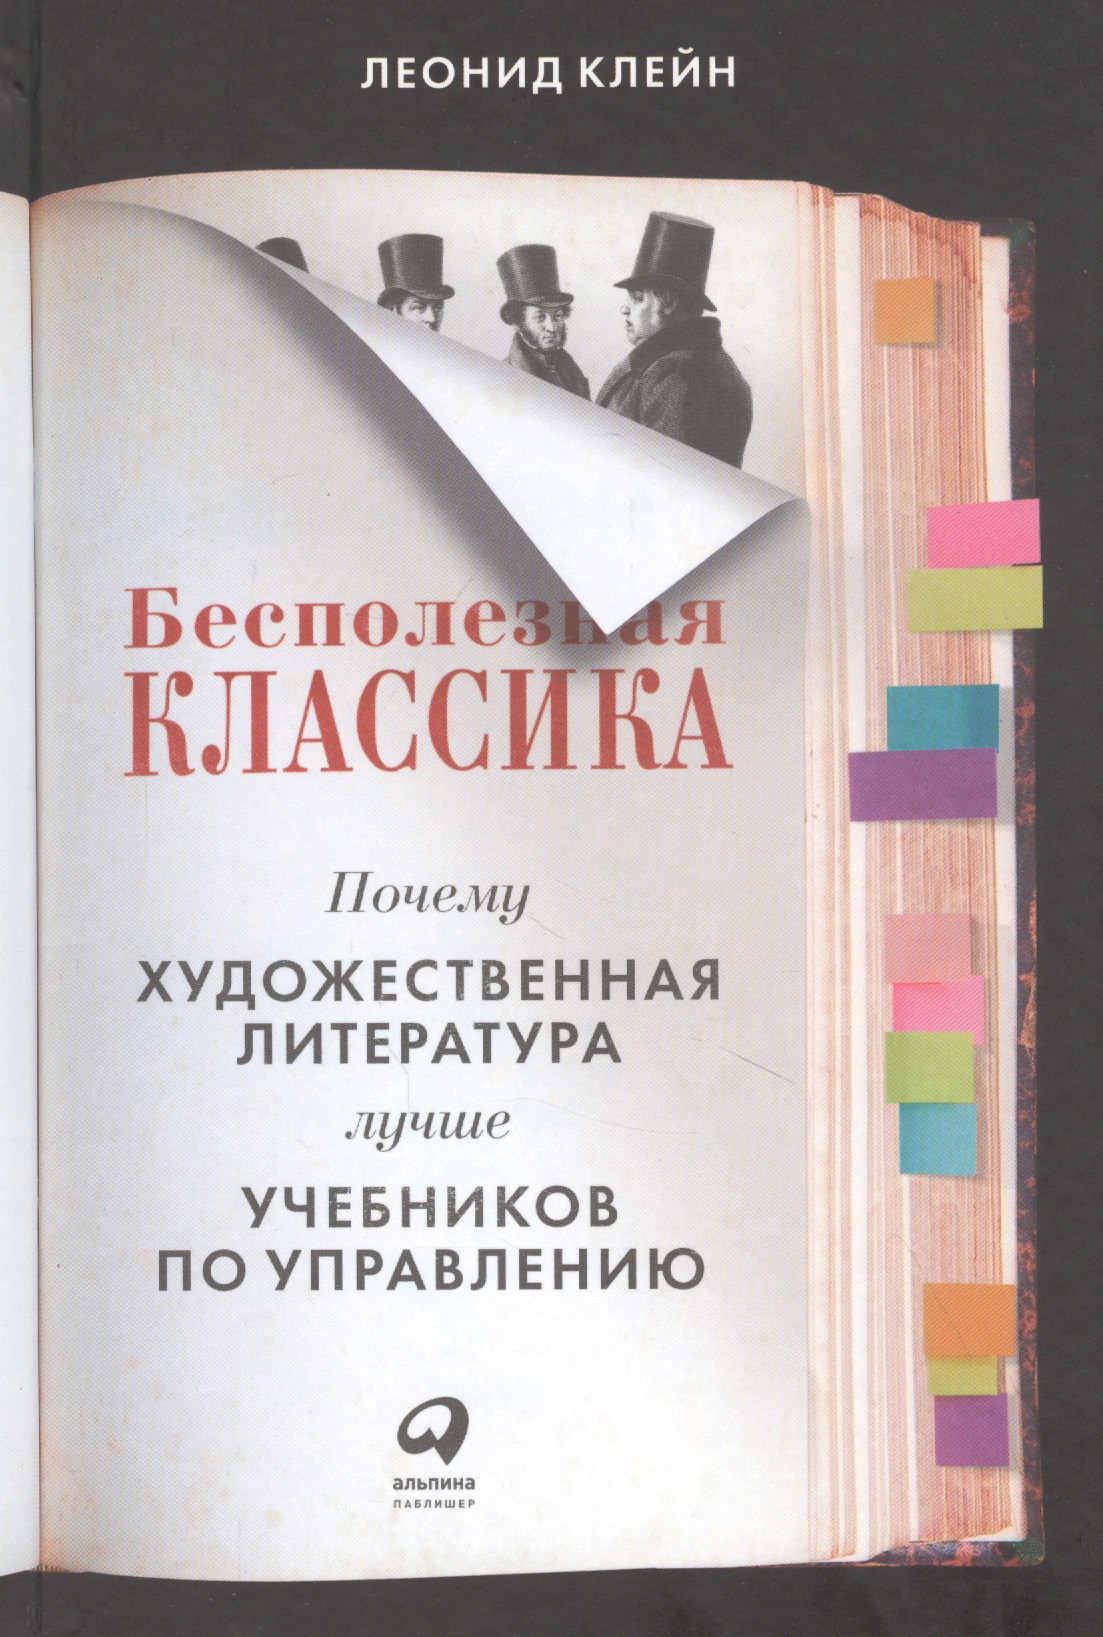 Клейн Леонид - Бесполезная классика: Почему художественная литература лучше учебников по управлению